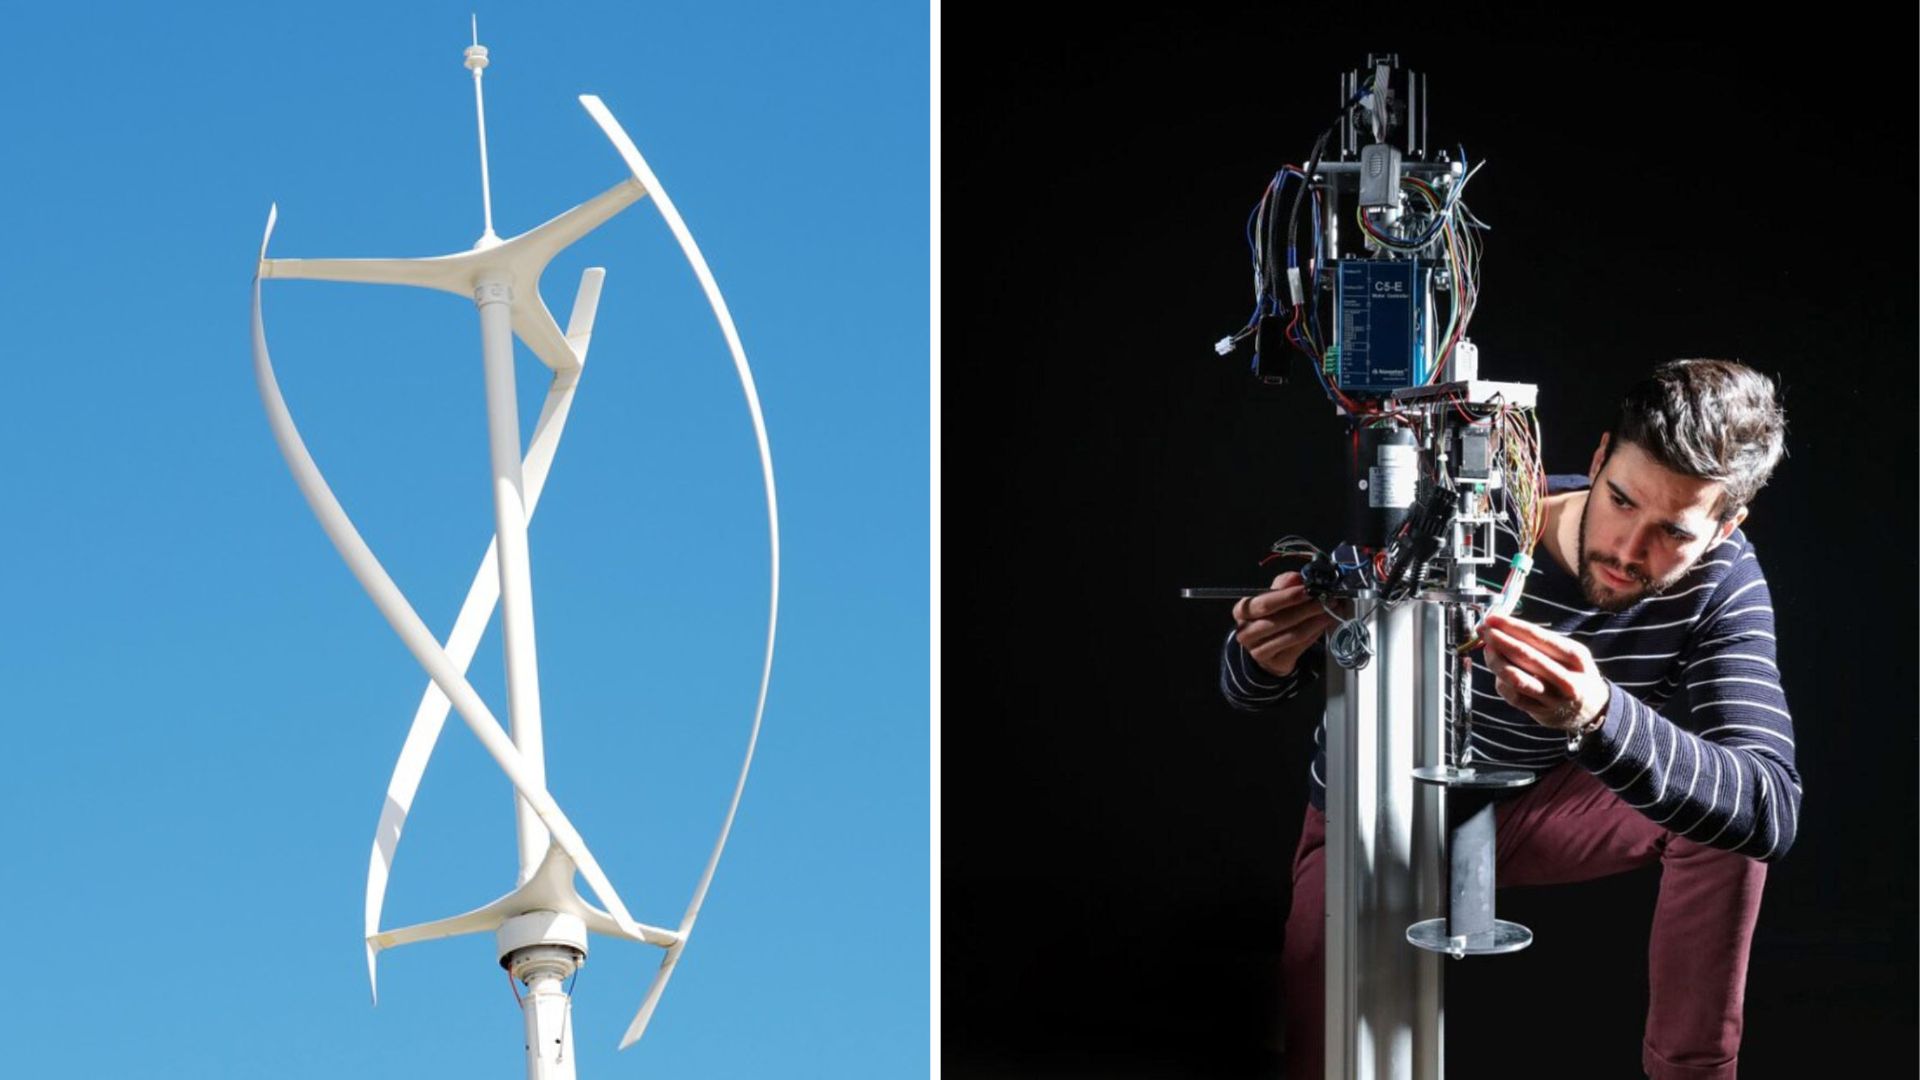 Blade tweak boosts vertical-axis wind turbine efficiency by 200% [Video]